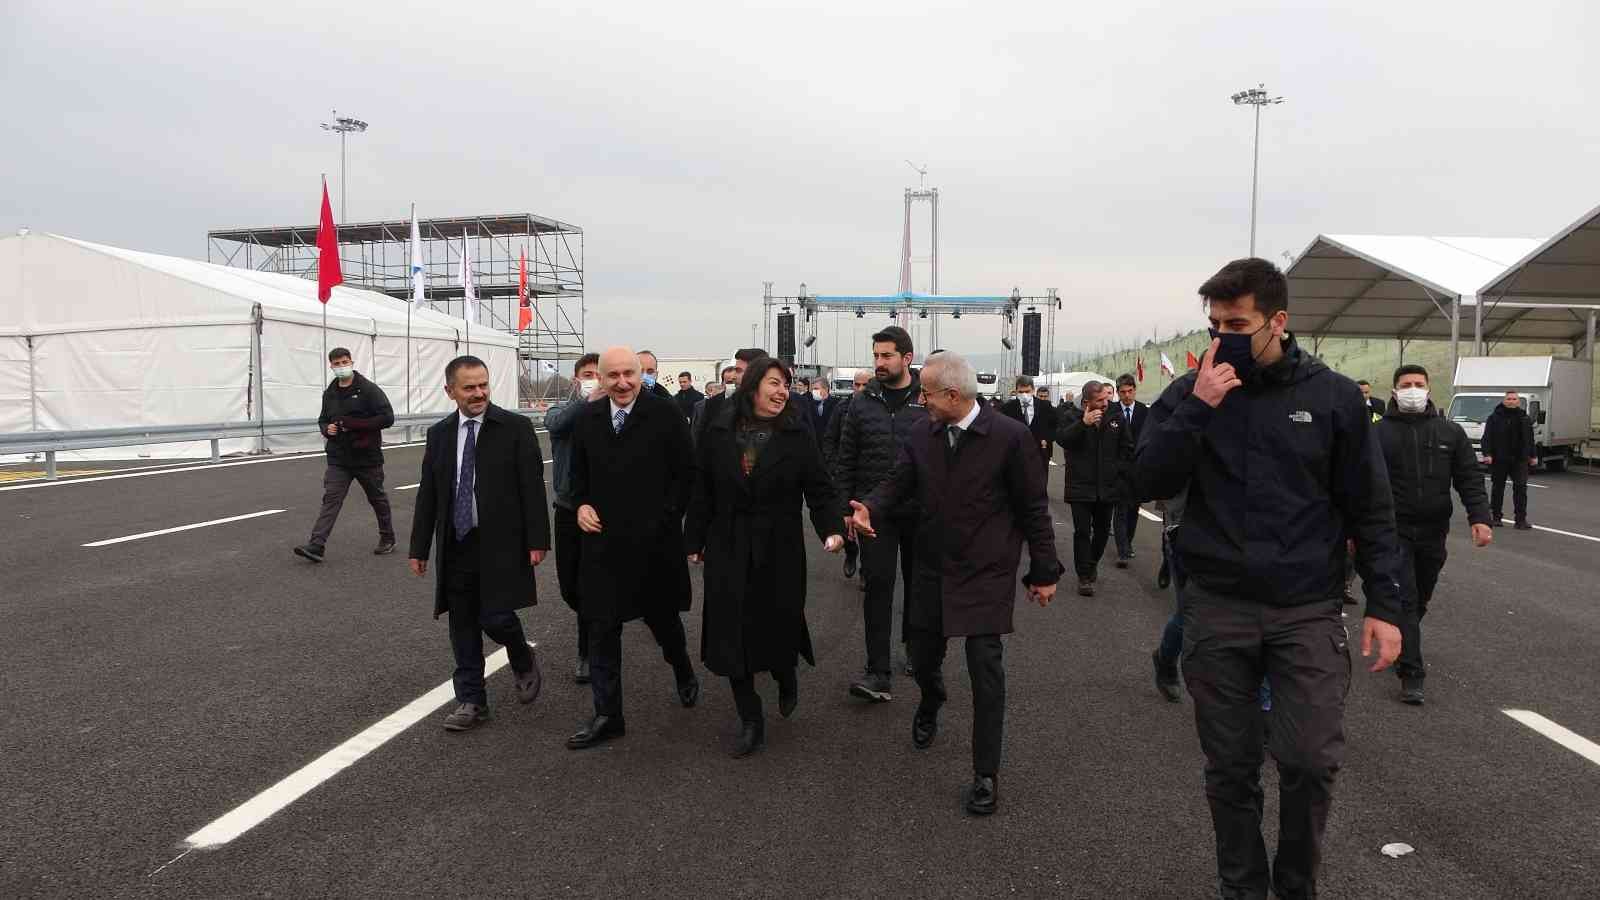 ÇANAKKALE (İHA) – Ulaştırma ve Altyapı Bakanı Adil Karaismailoğlu, “1915 Çanakkale Köprüsü’nün Cuma günü açılmasını büyük bir sabırsızlıkla ...